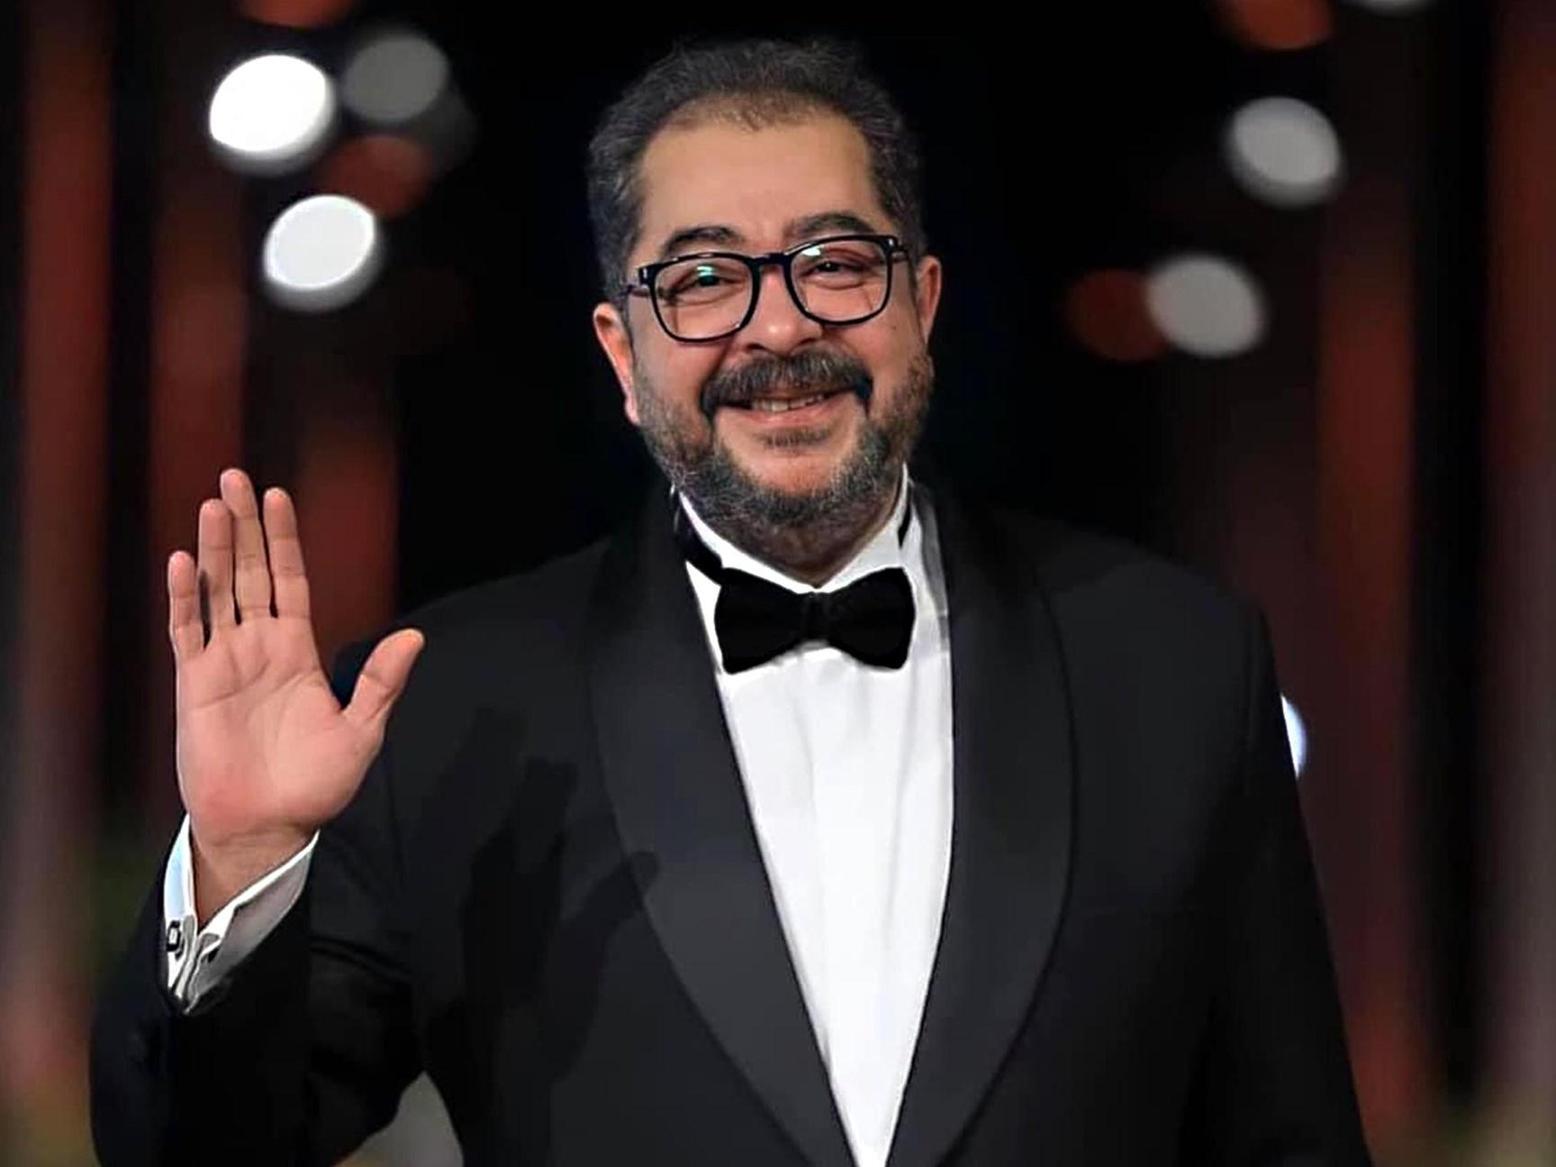 وفاة الممثل المصري طارق عبد العزيز أثناء التصوير